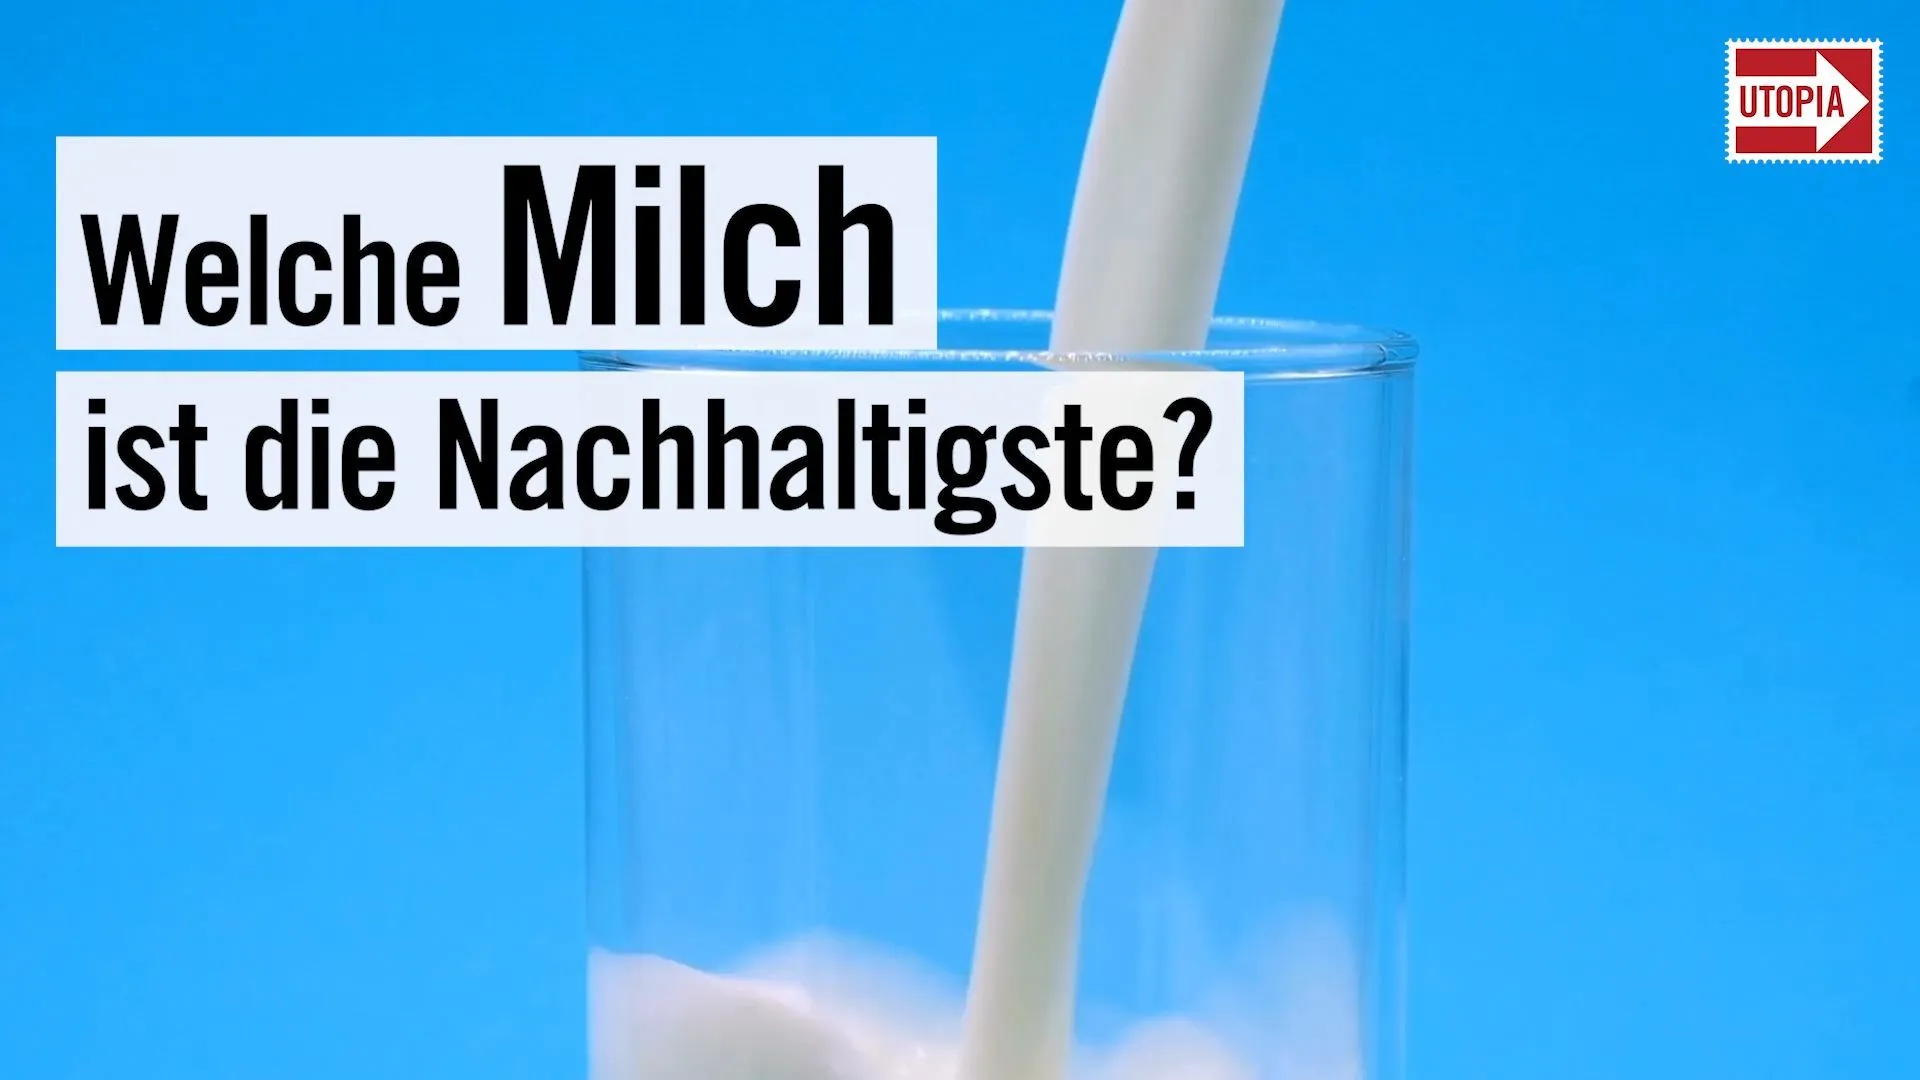 Welche Milch ist die Nachhaltigste?